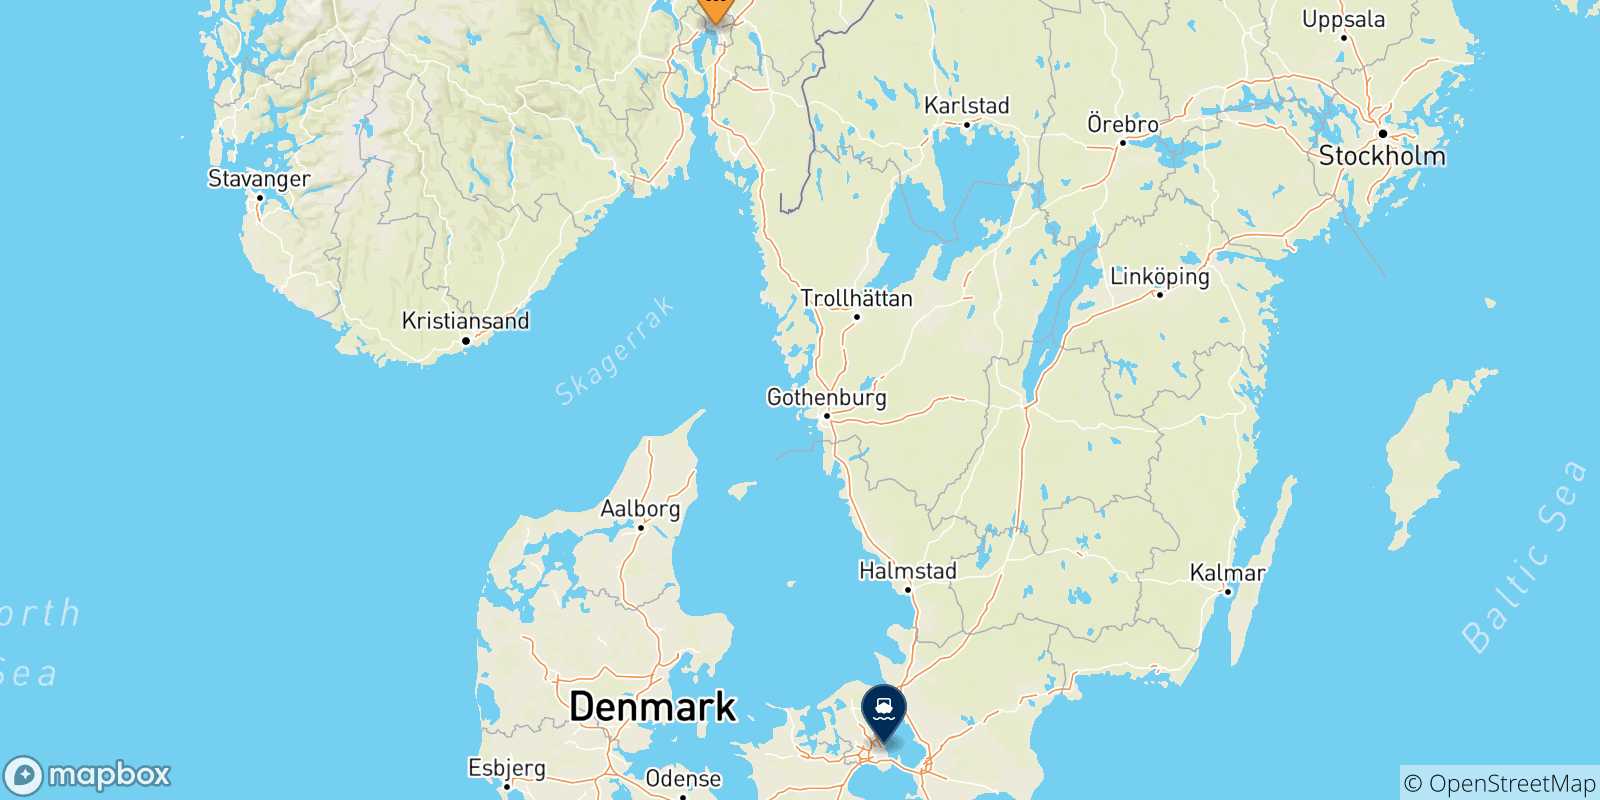 Mappa delle possibili rotte tra Oslo e la Danimarca